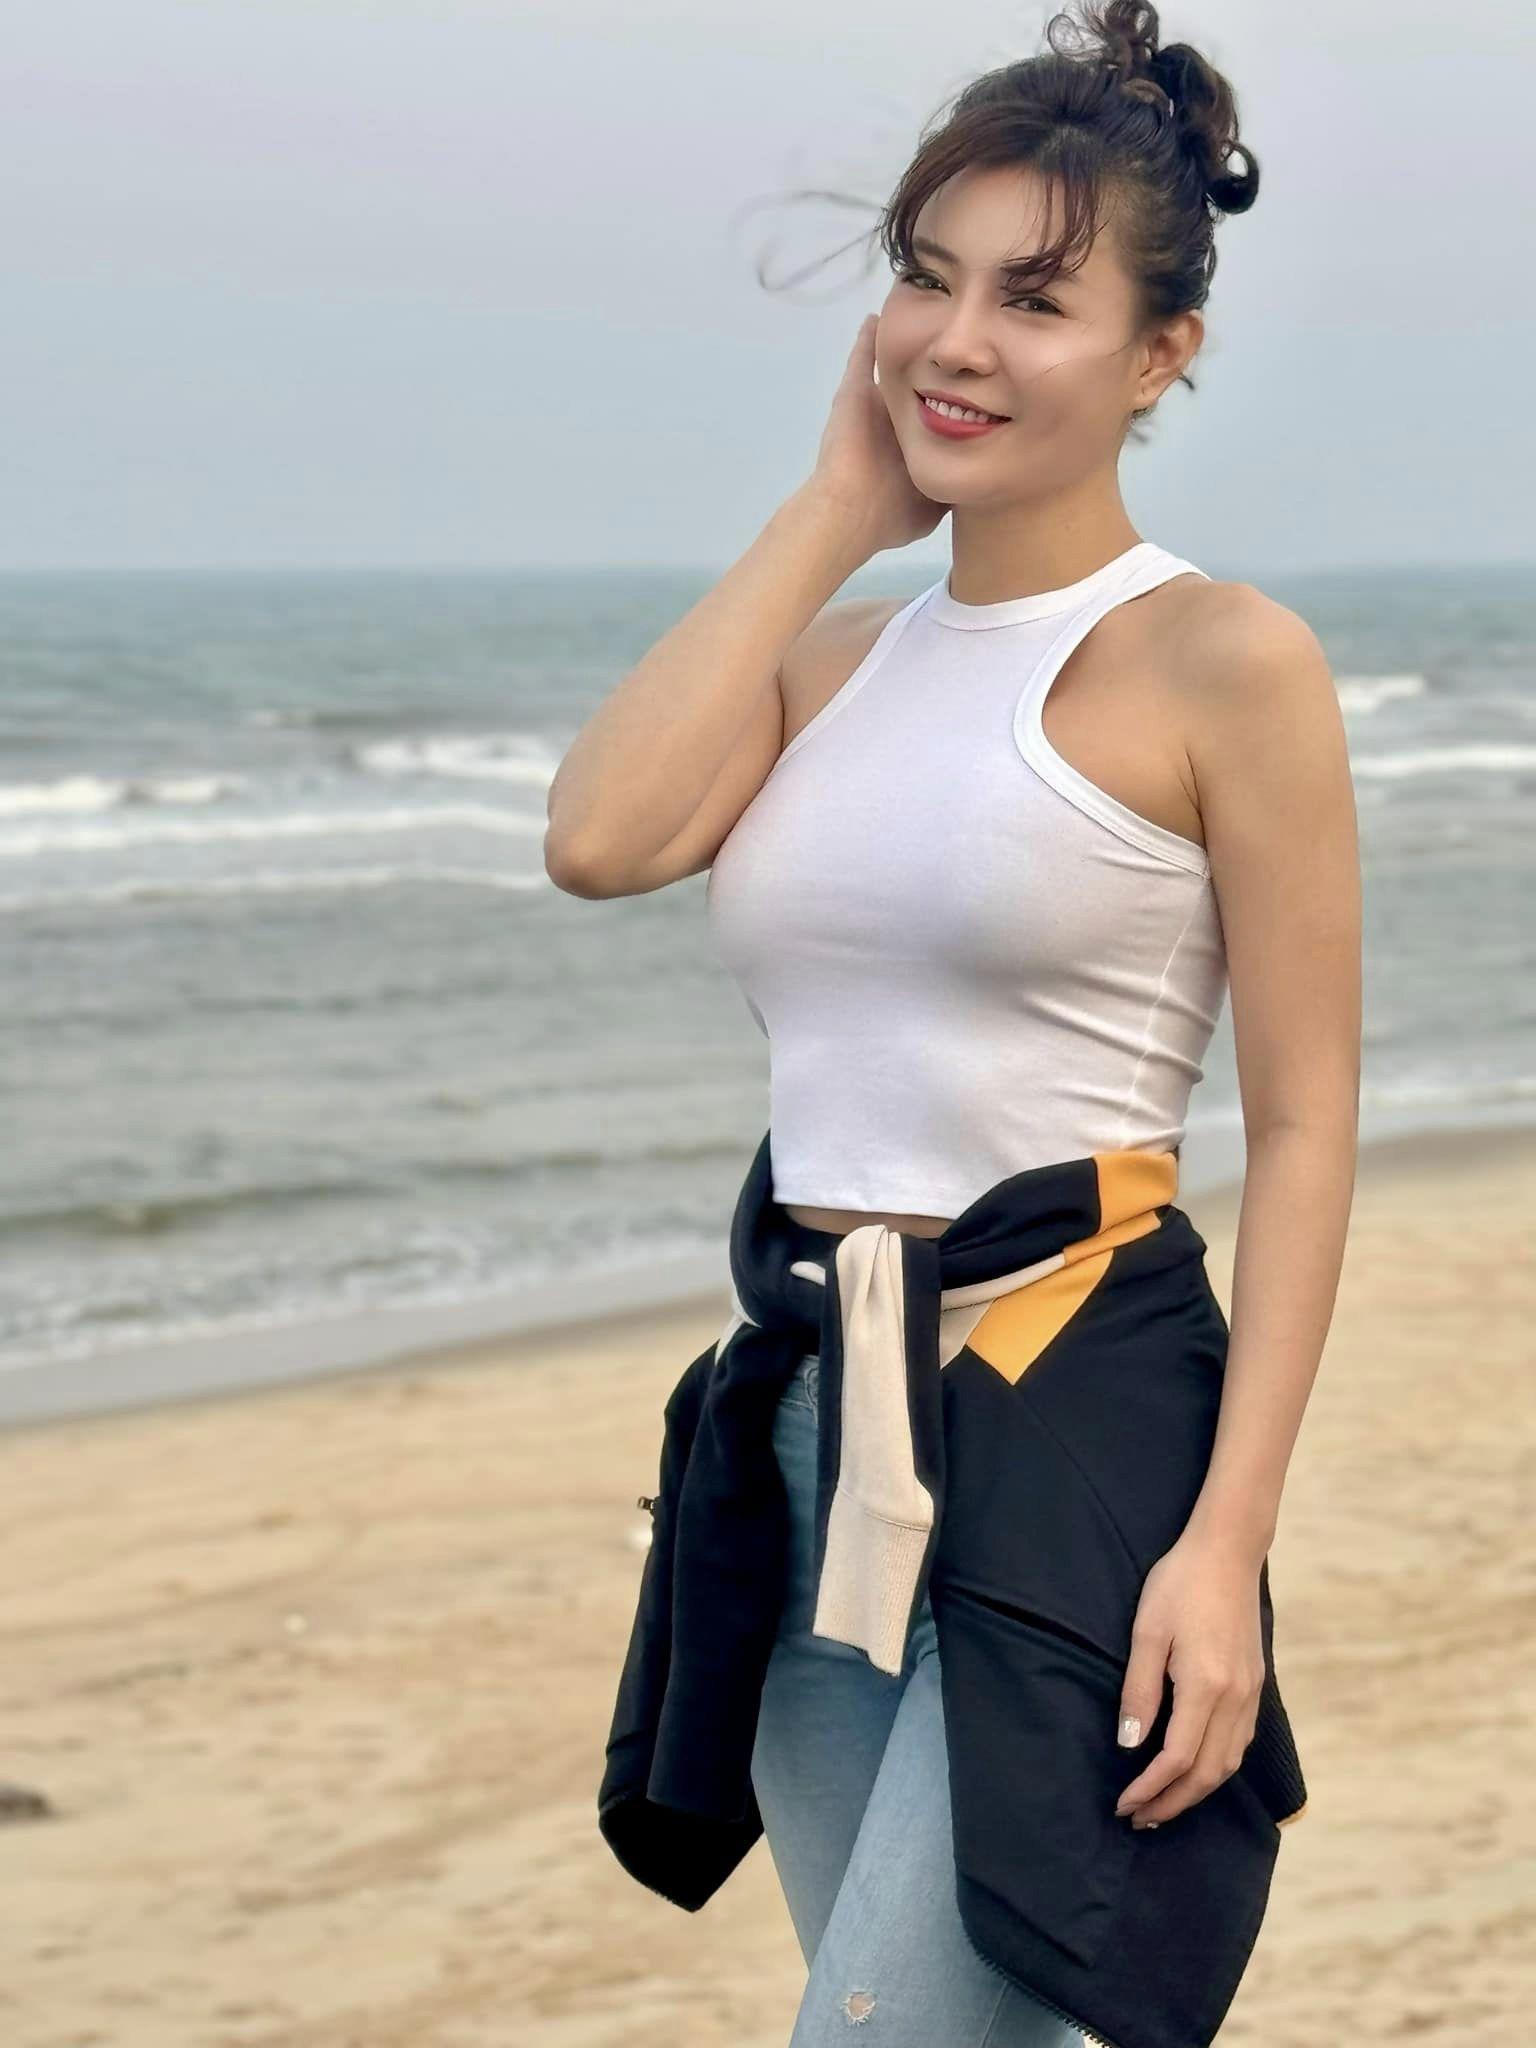 Thanh Hương phối áo thun cùng quần jeans đơn giản khi đi biển.